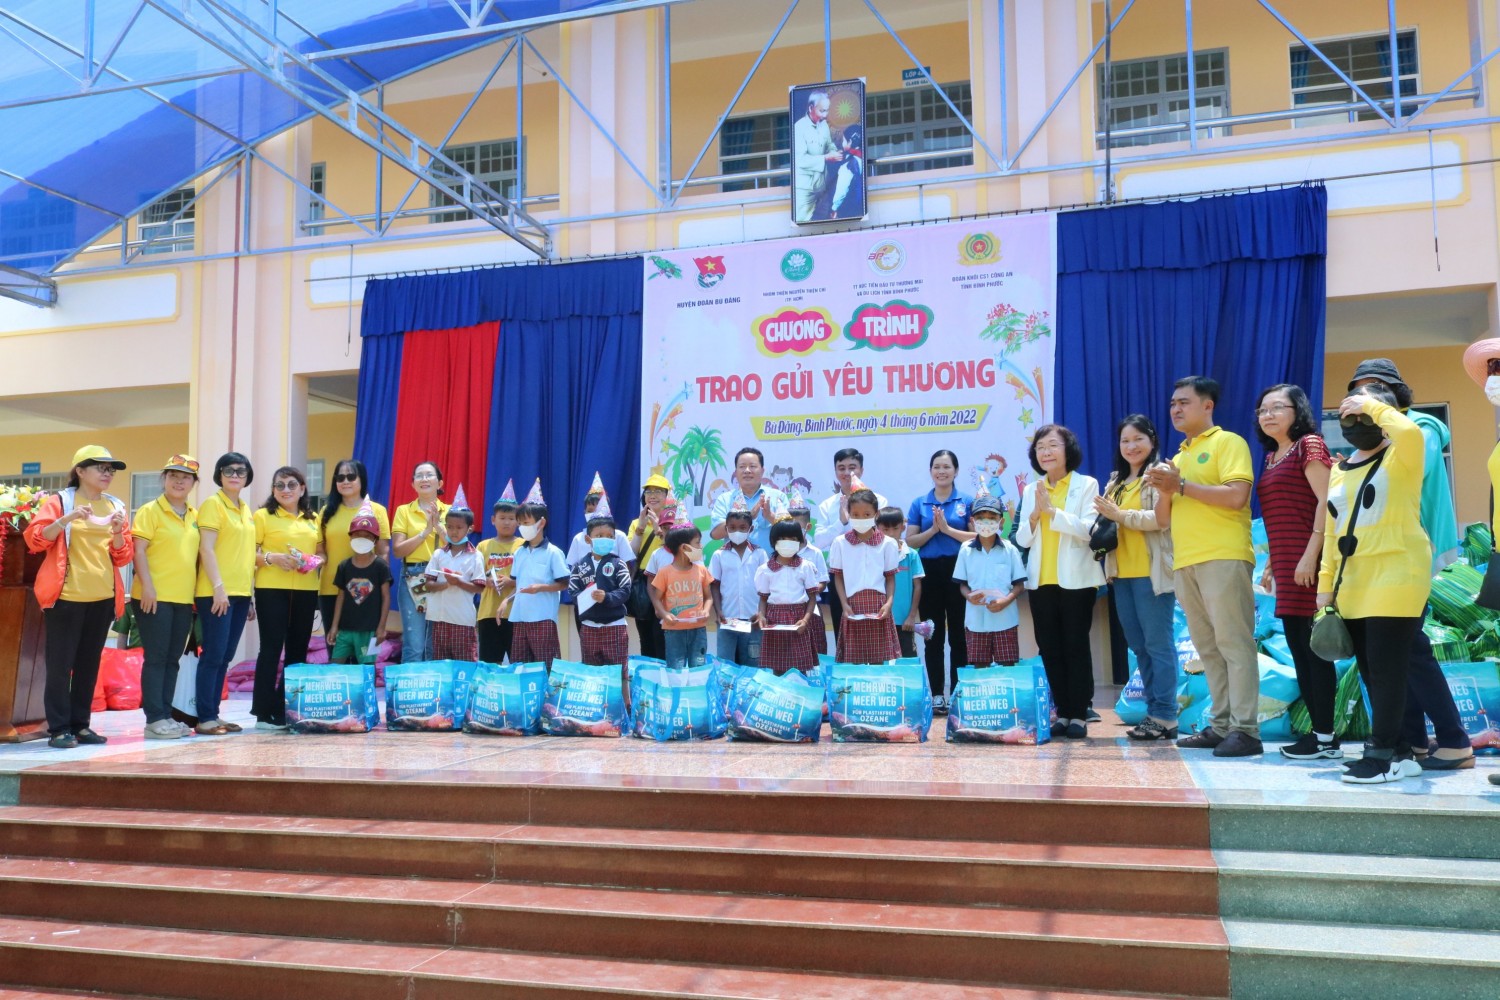 Chương trình “Trao gửi yêu thương” trao tặng 310 phần quà cho hộ nghèo, học sinh vượt khó tại xã Bình Minh